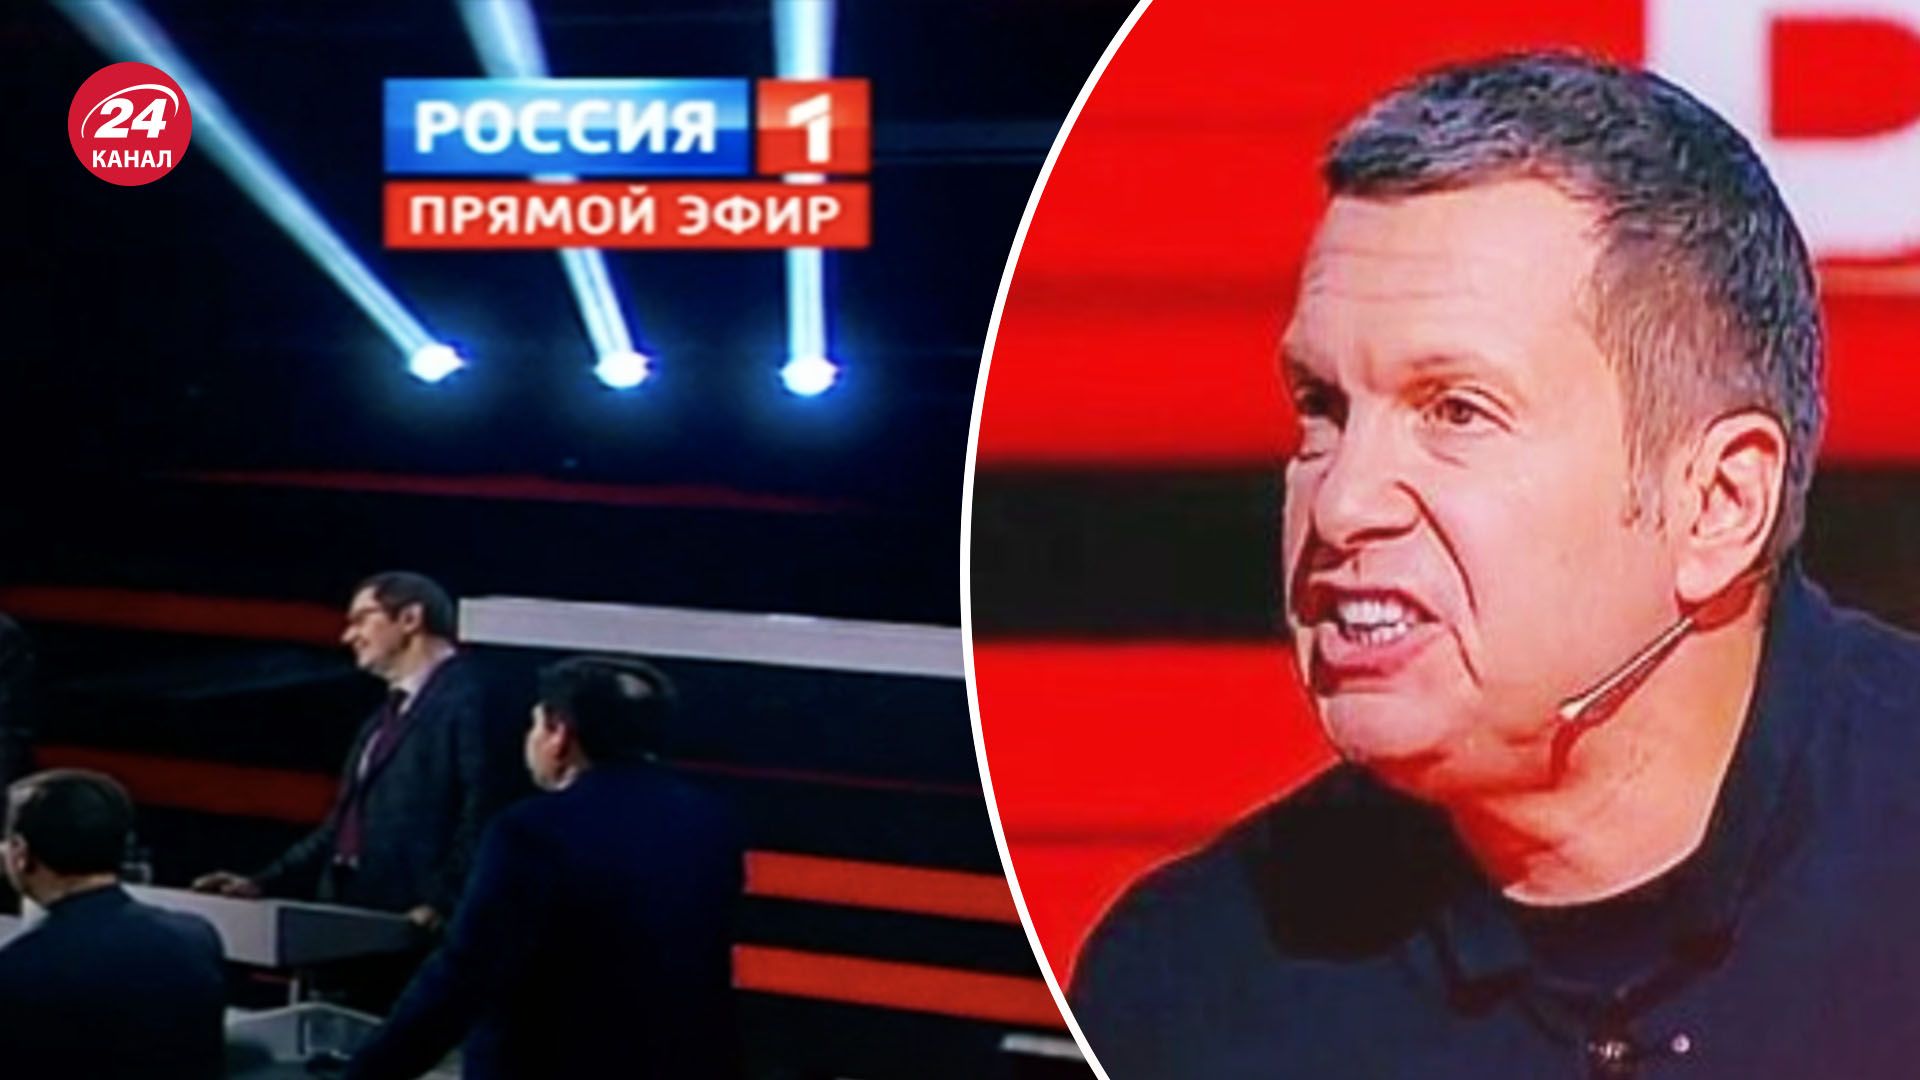 Соловьев угрожает сжечь Берлин - очередная истерика на российском телевидении - 24 Канал